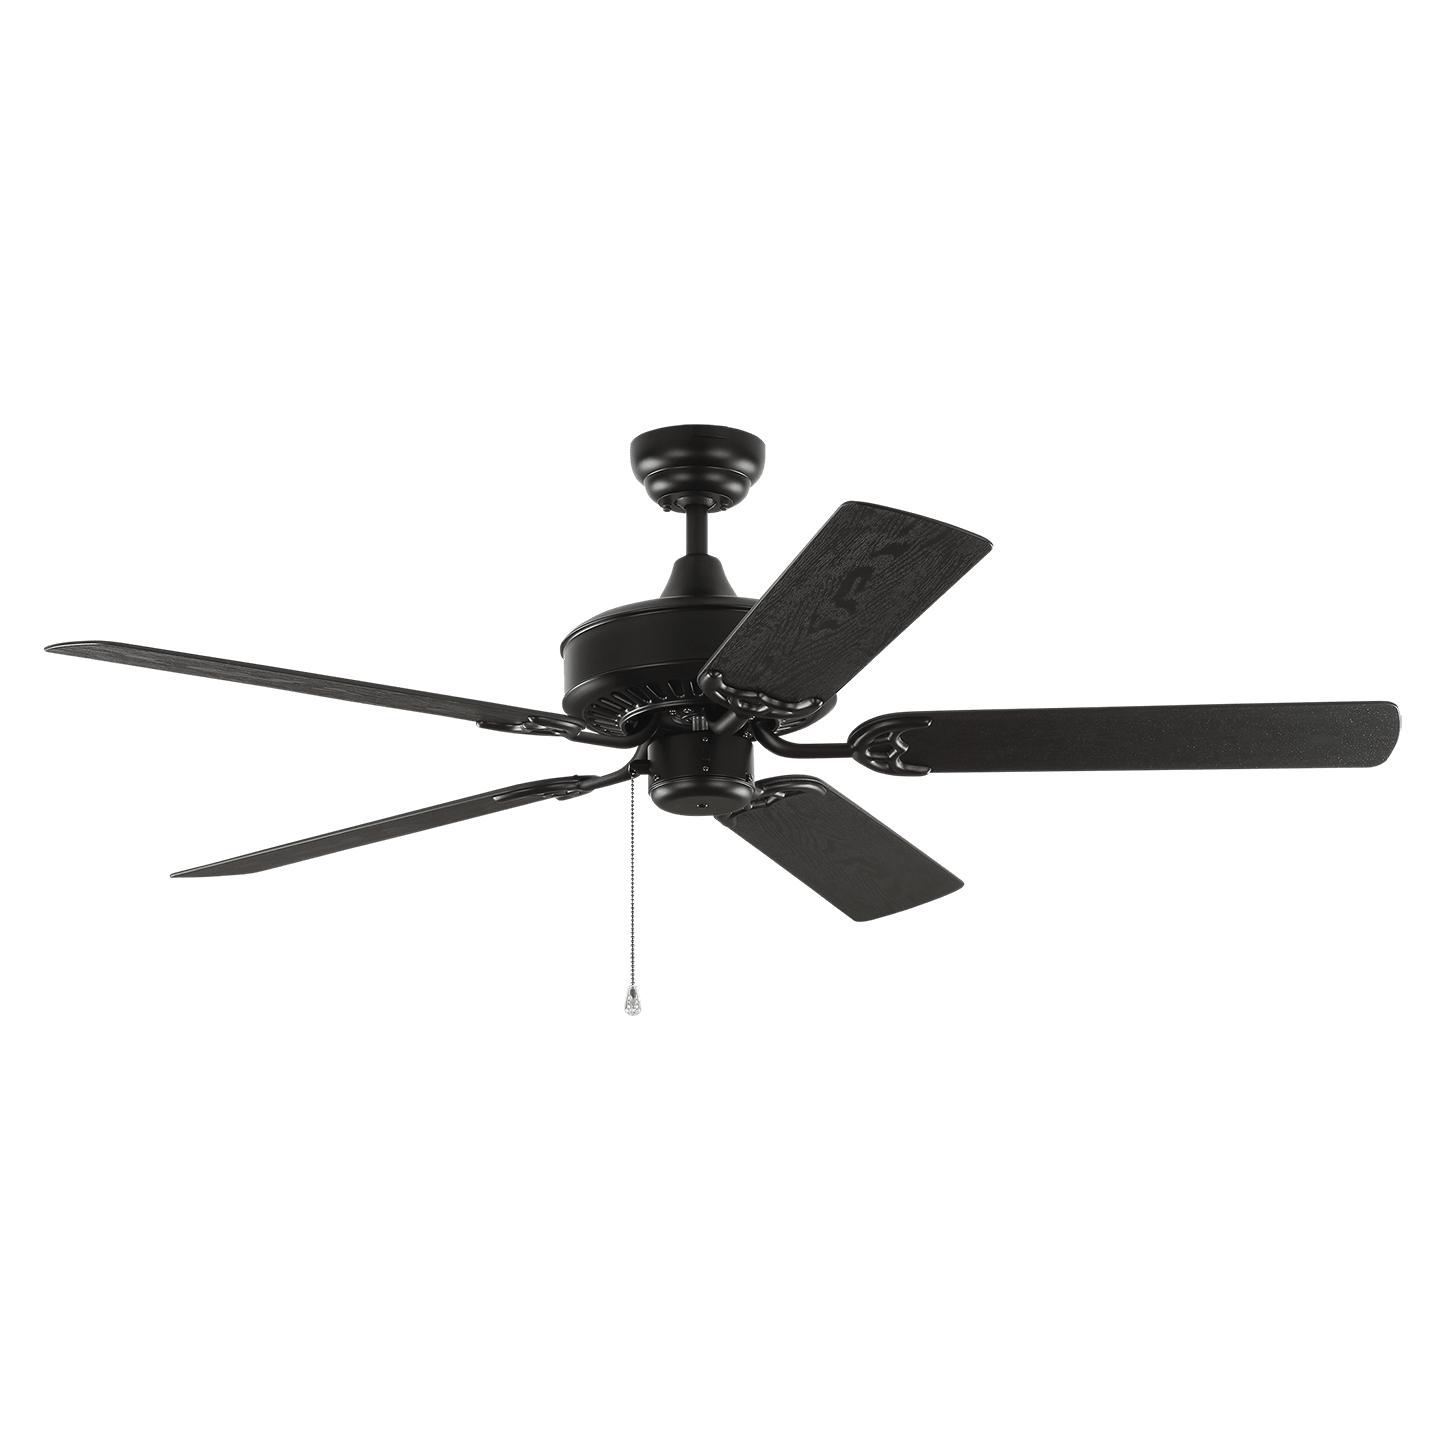 Купить Потолочный вентилятор 52" Haven Outdoor Ceiling Fan в интернет-магазине roooms.ru